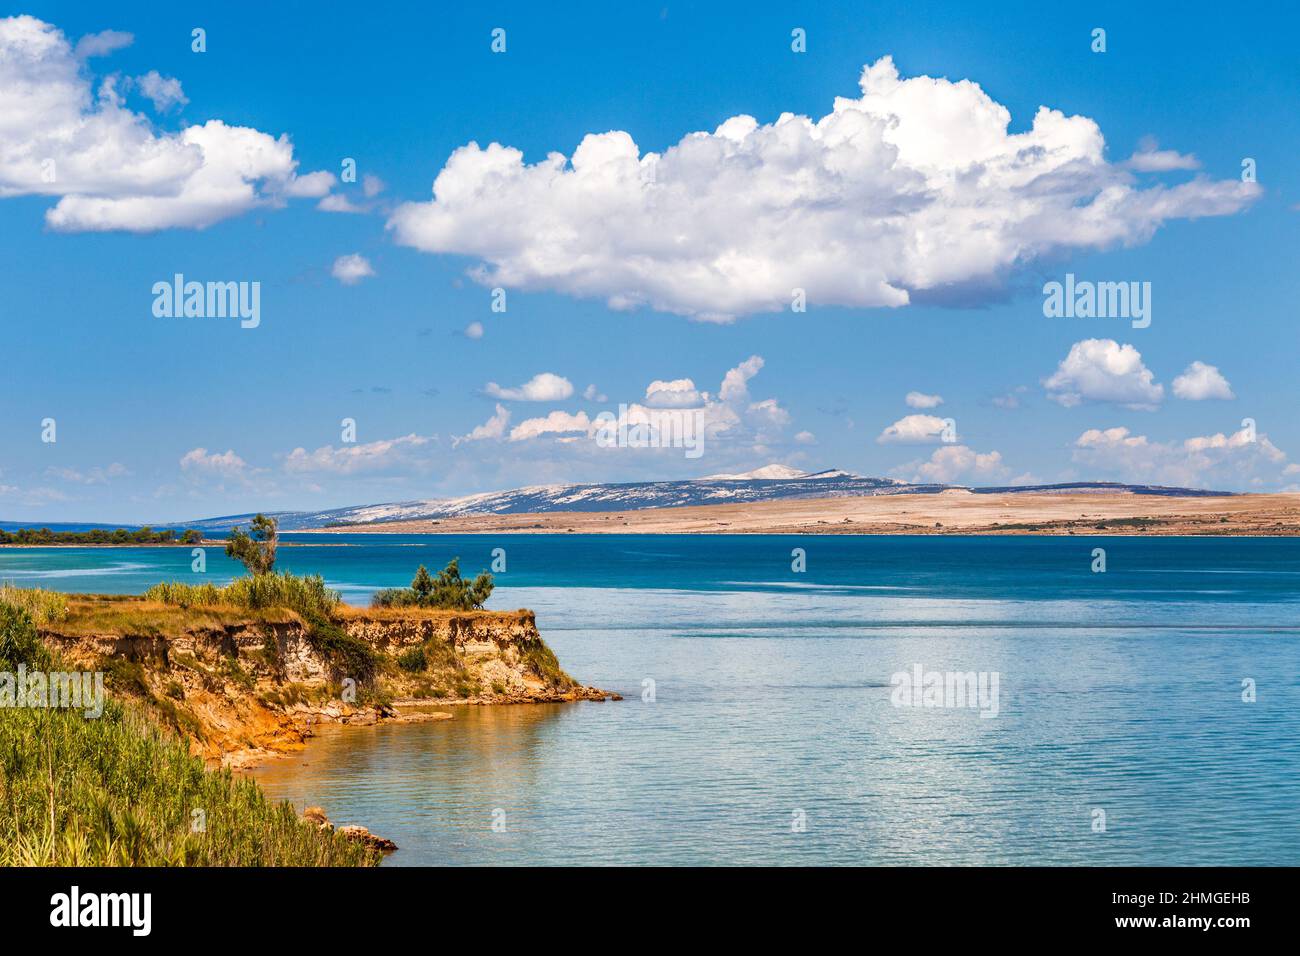 Die Landschaft mit Meeresbucht und mit der Insel Pag im Hintergrund, Kroatien, Europa. Stockfoto